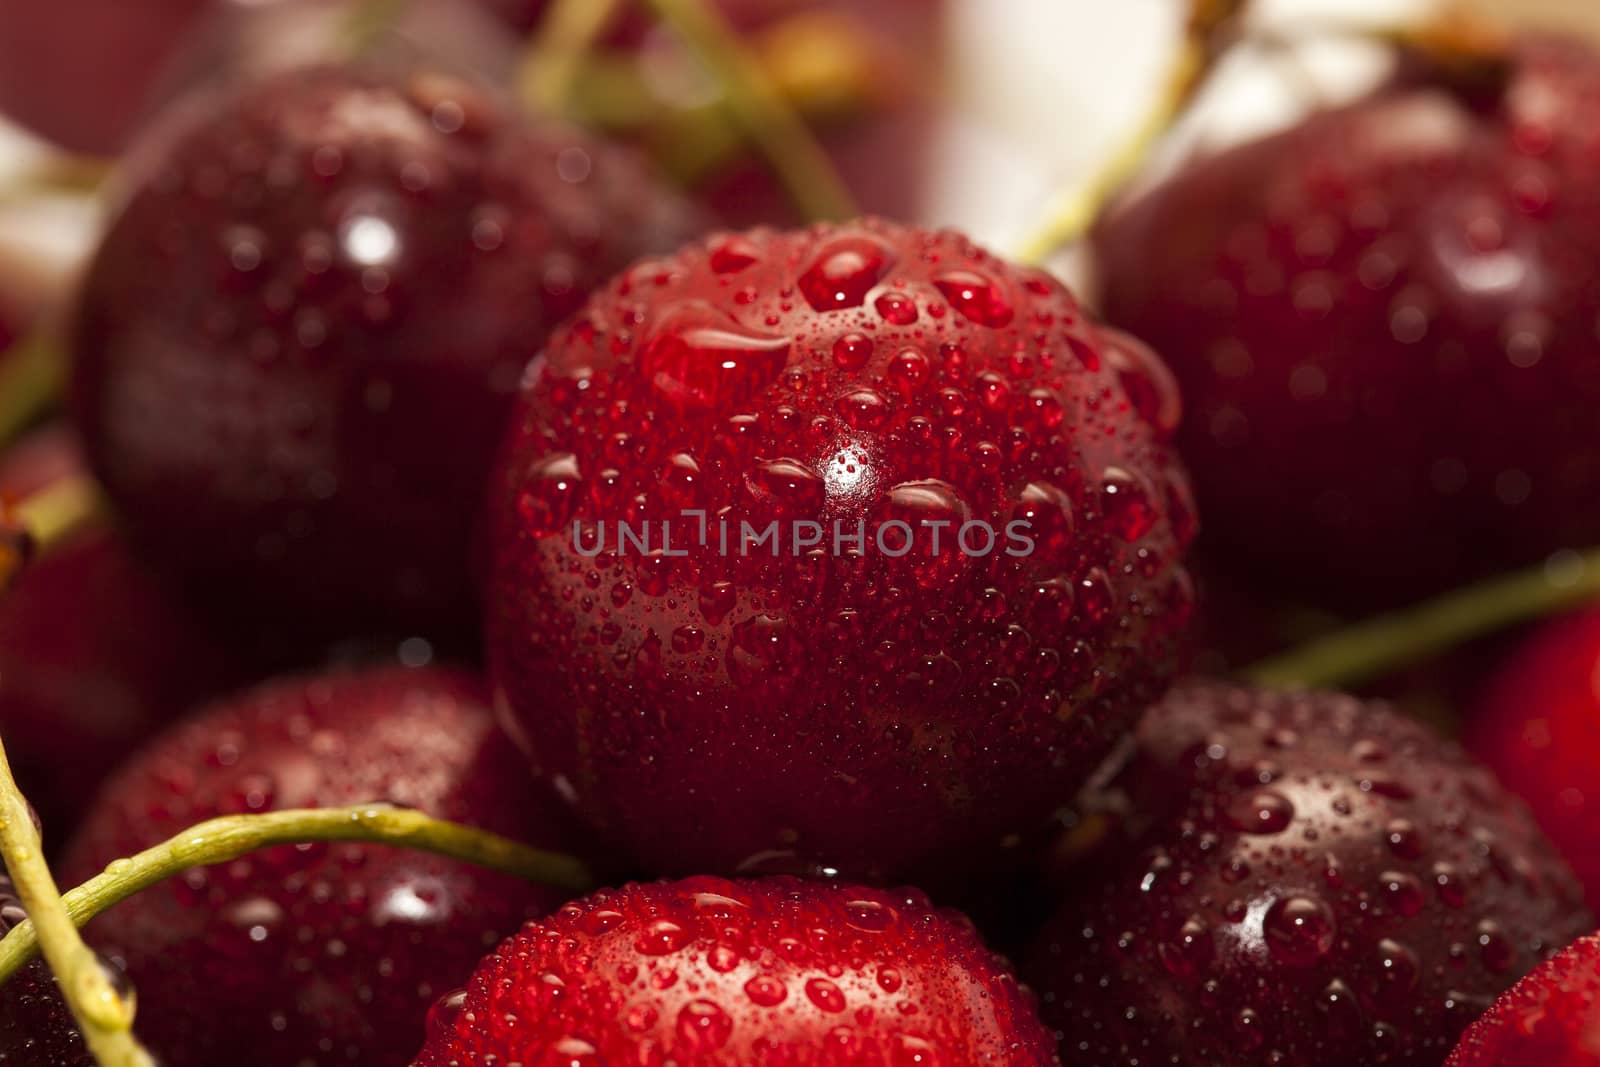 red ripe cherry by avq